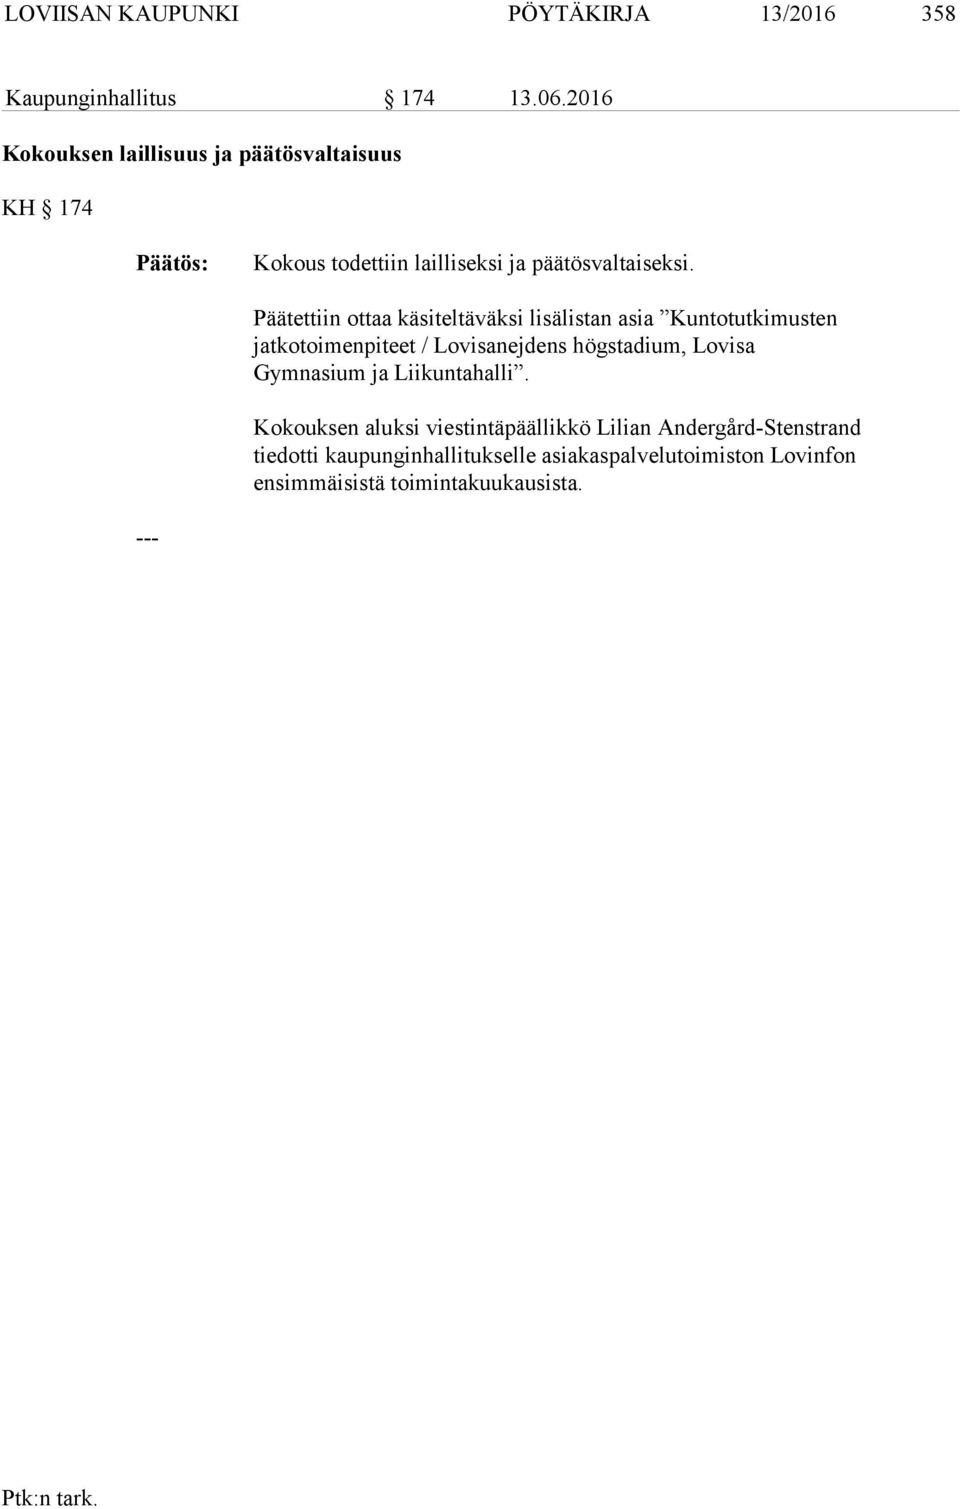 Päätettiin ottaa käsiteltäväksi lisälistan asia Kuntotutkimusten jatkotoimenpiteet / Lovisanejdens högstadium, Lovisa